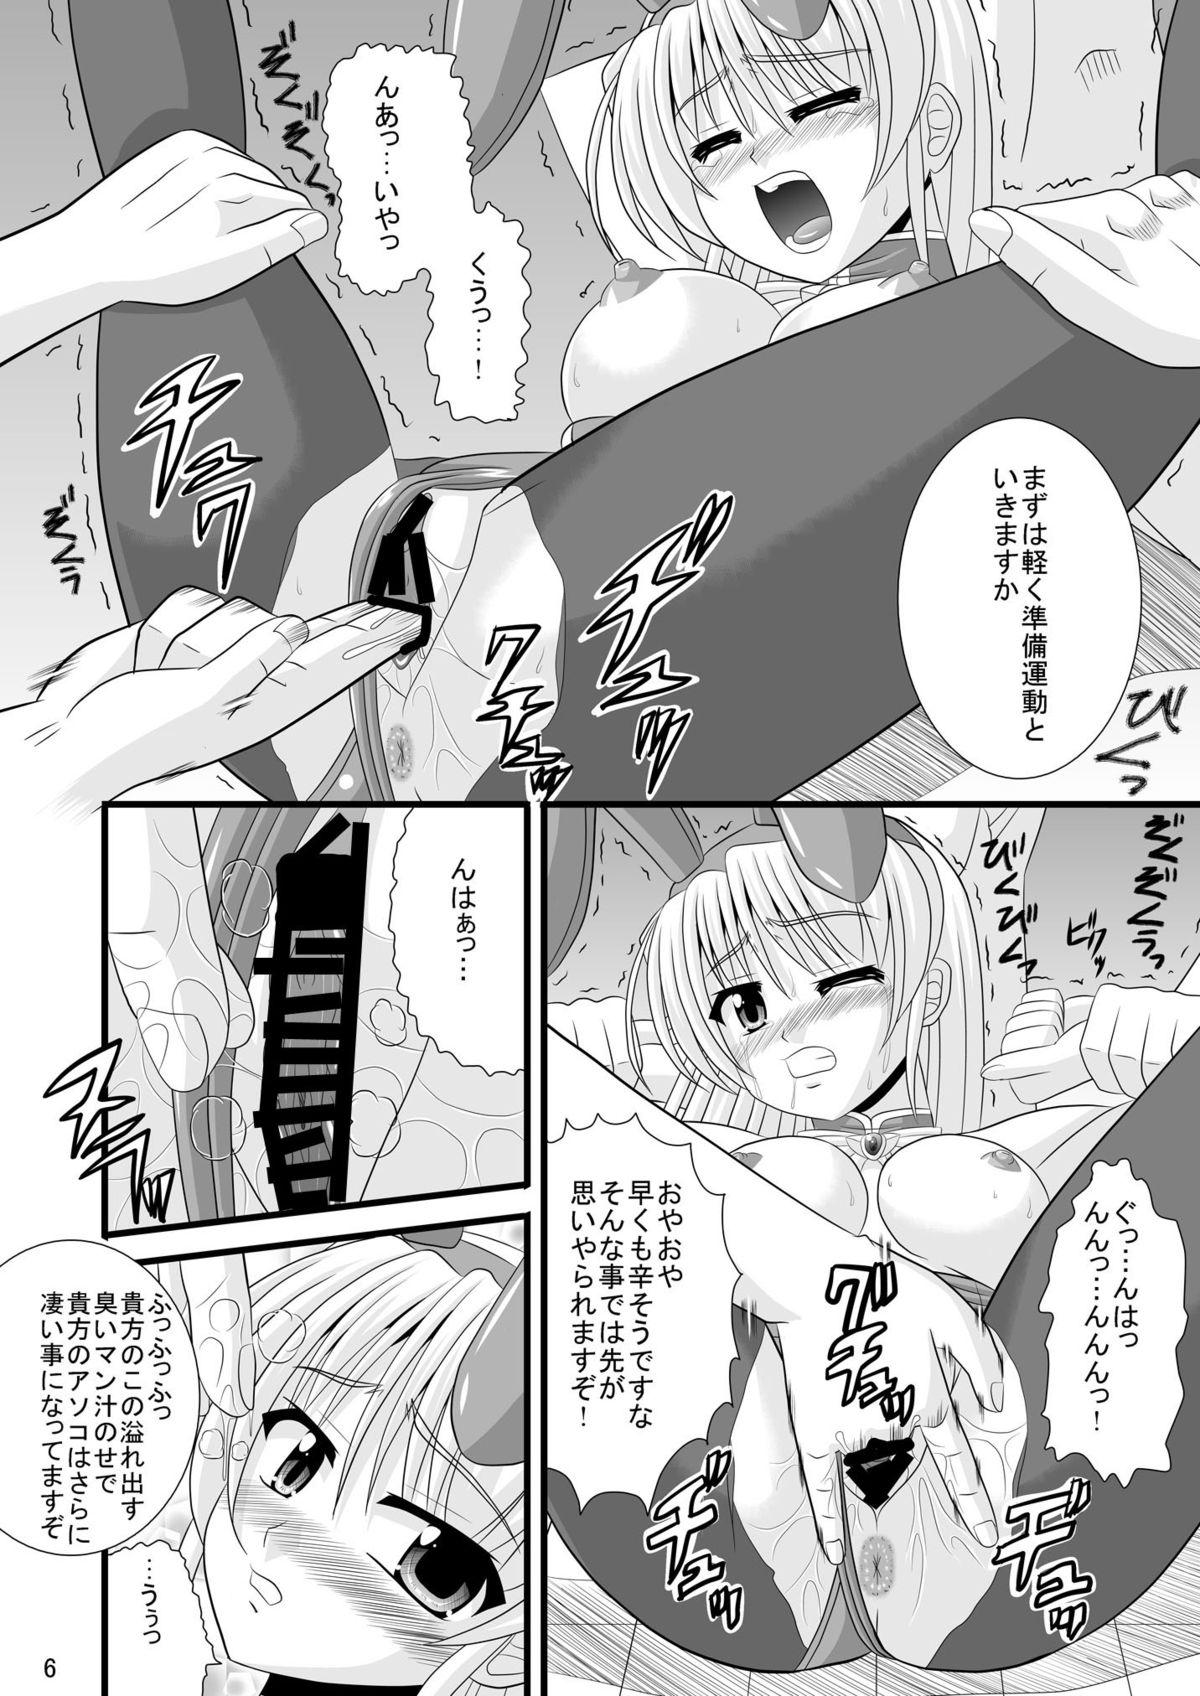 Whores Hime-sama no Himitsu Settai - Yoake mae yori ruriiro na Reversecowgirl - Page 6